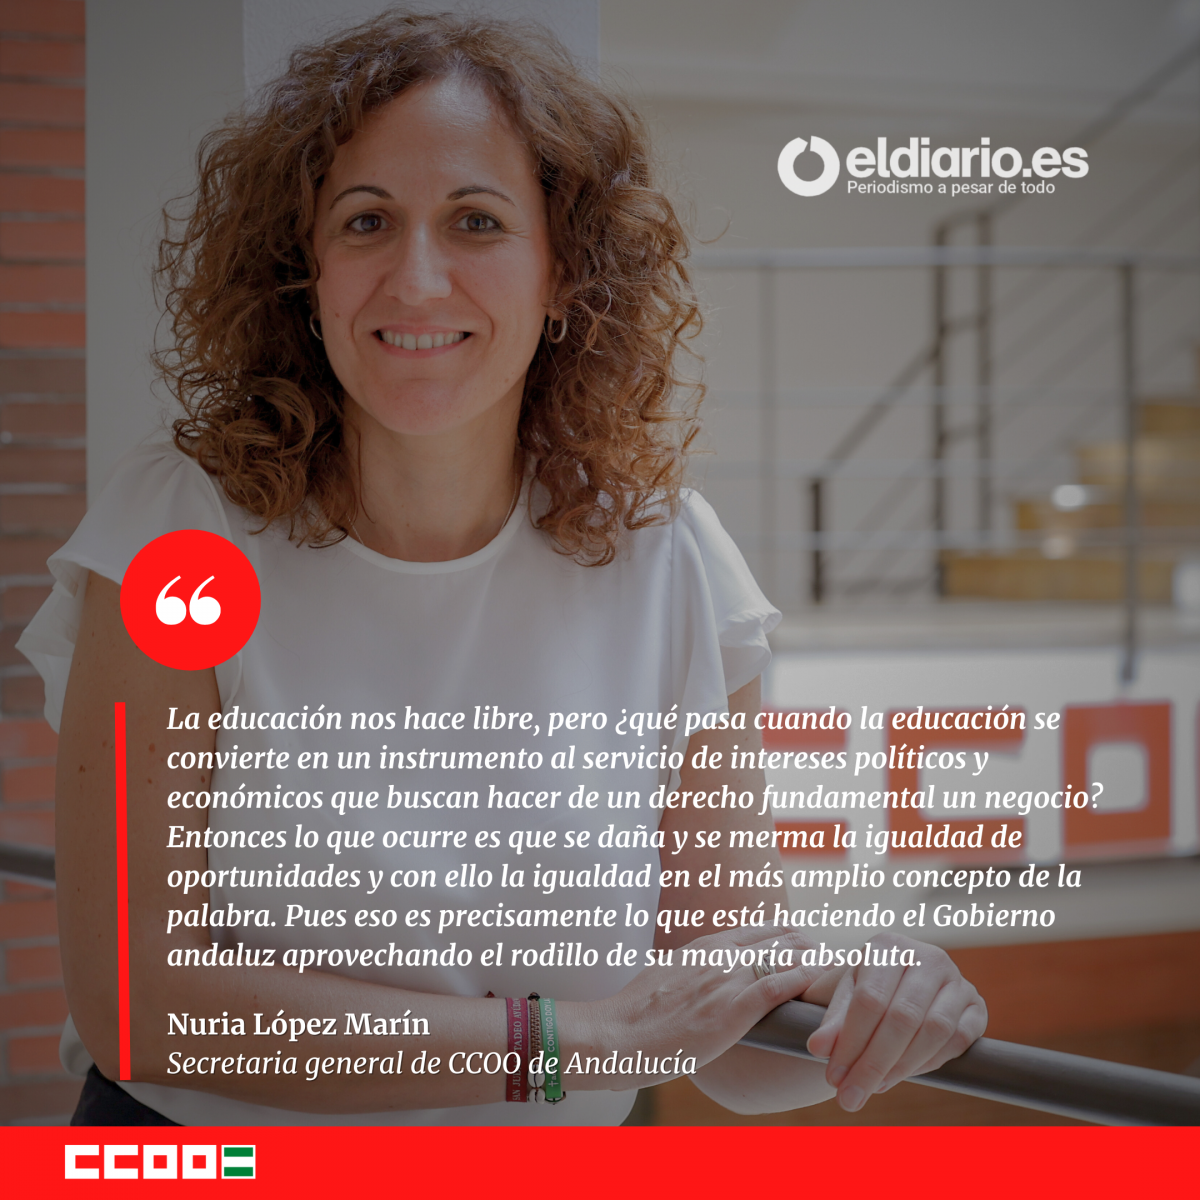 Nuria Lpez Marn, secretaria general de CCOO de Andaluca